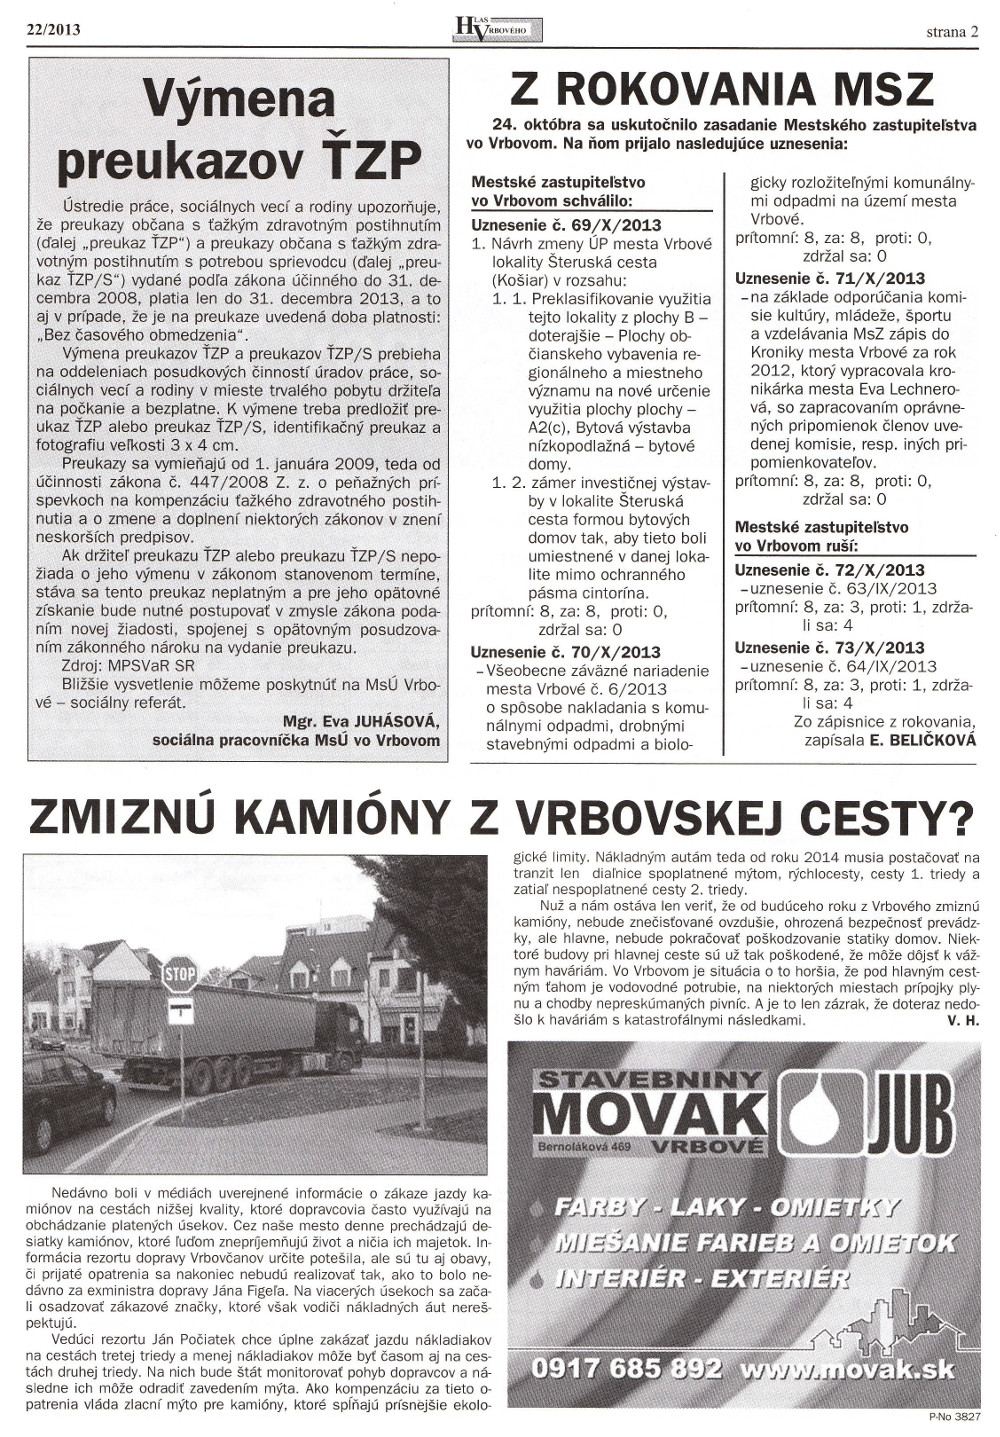 Hlas Vrbového 22/2013, strana 2